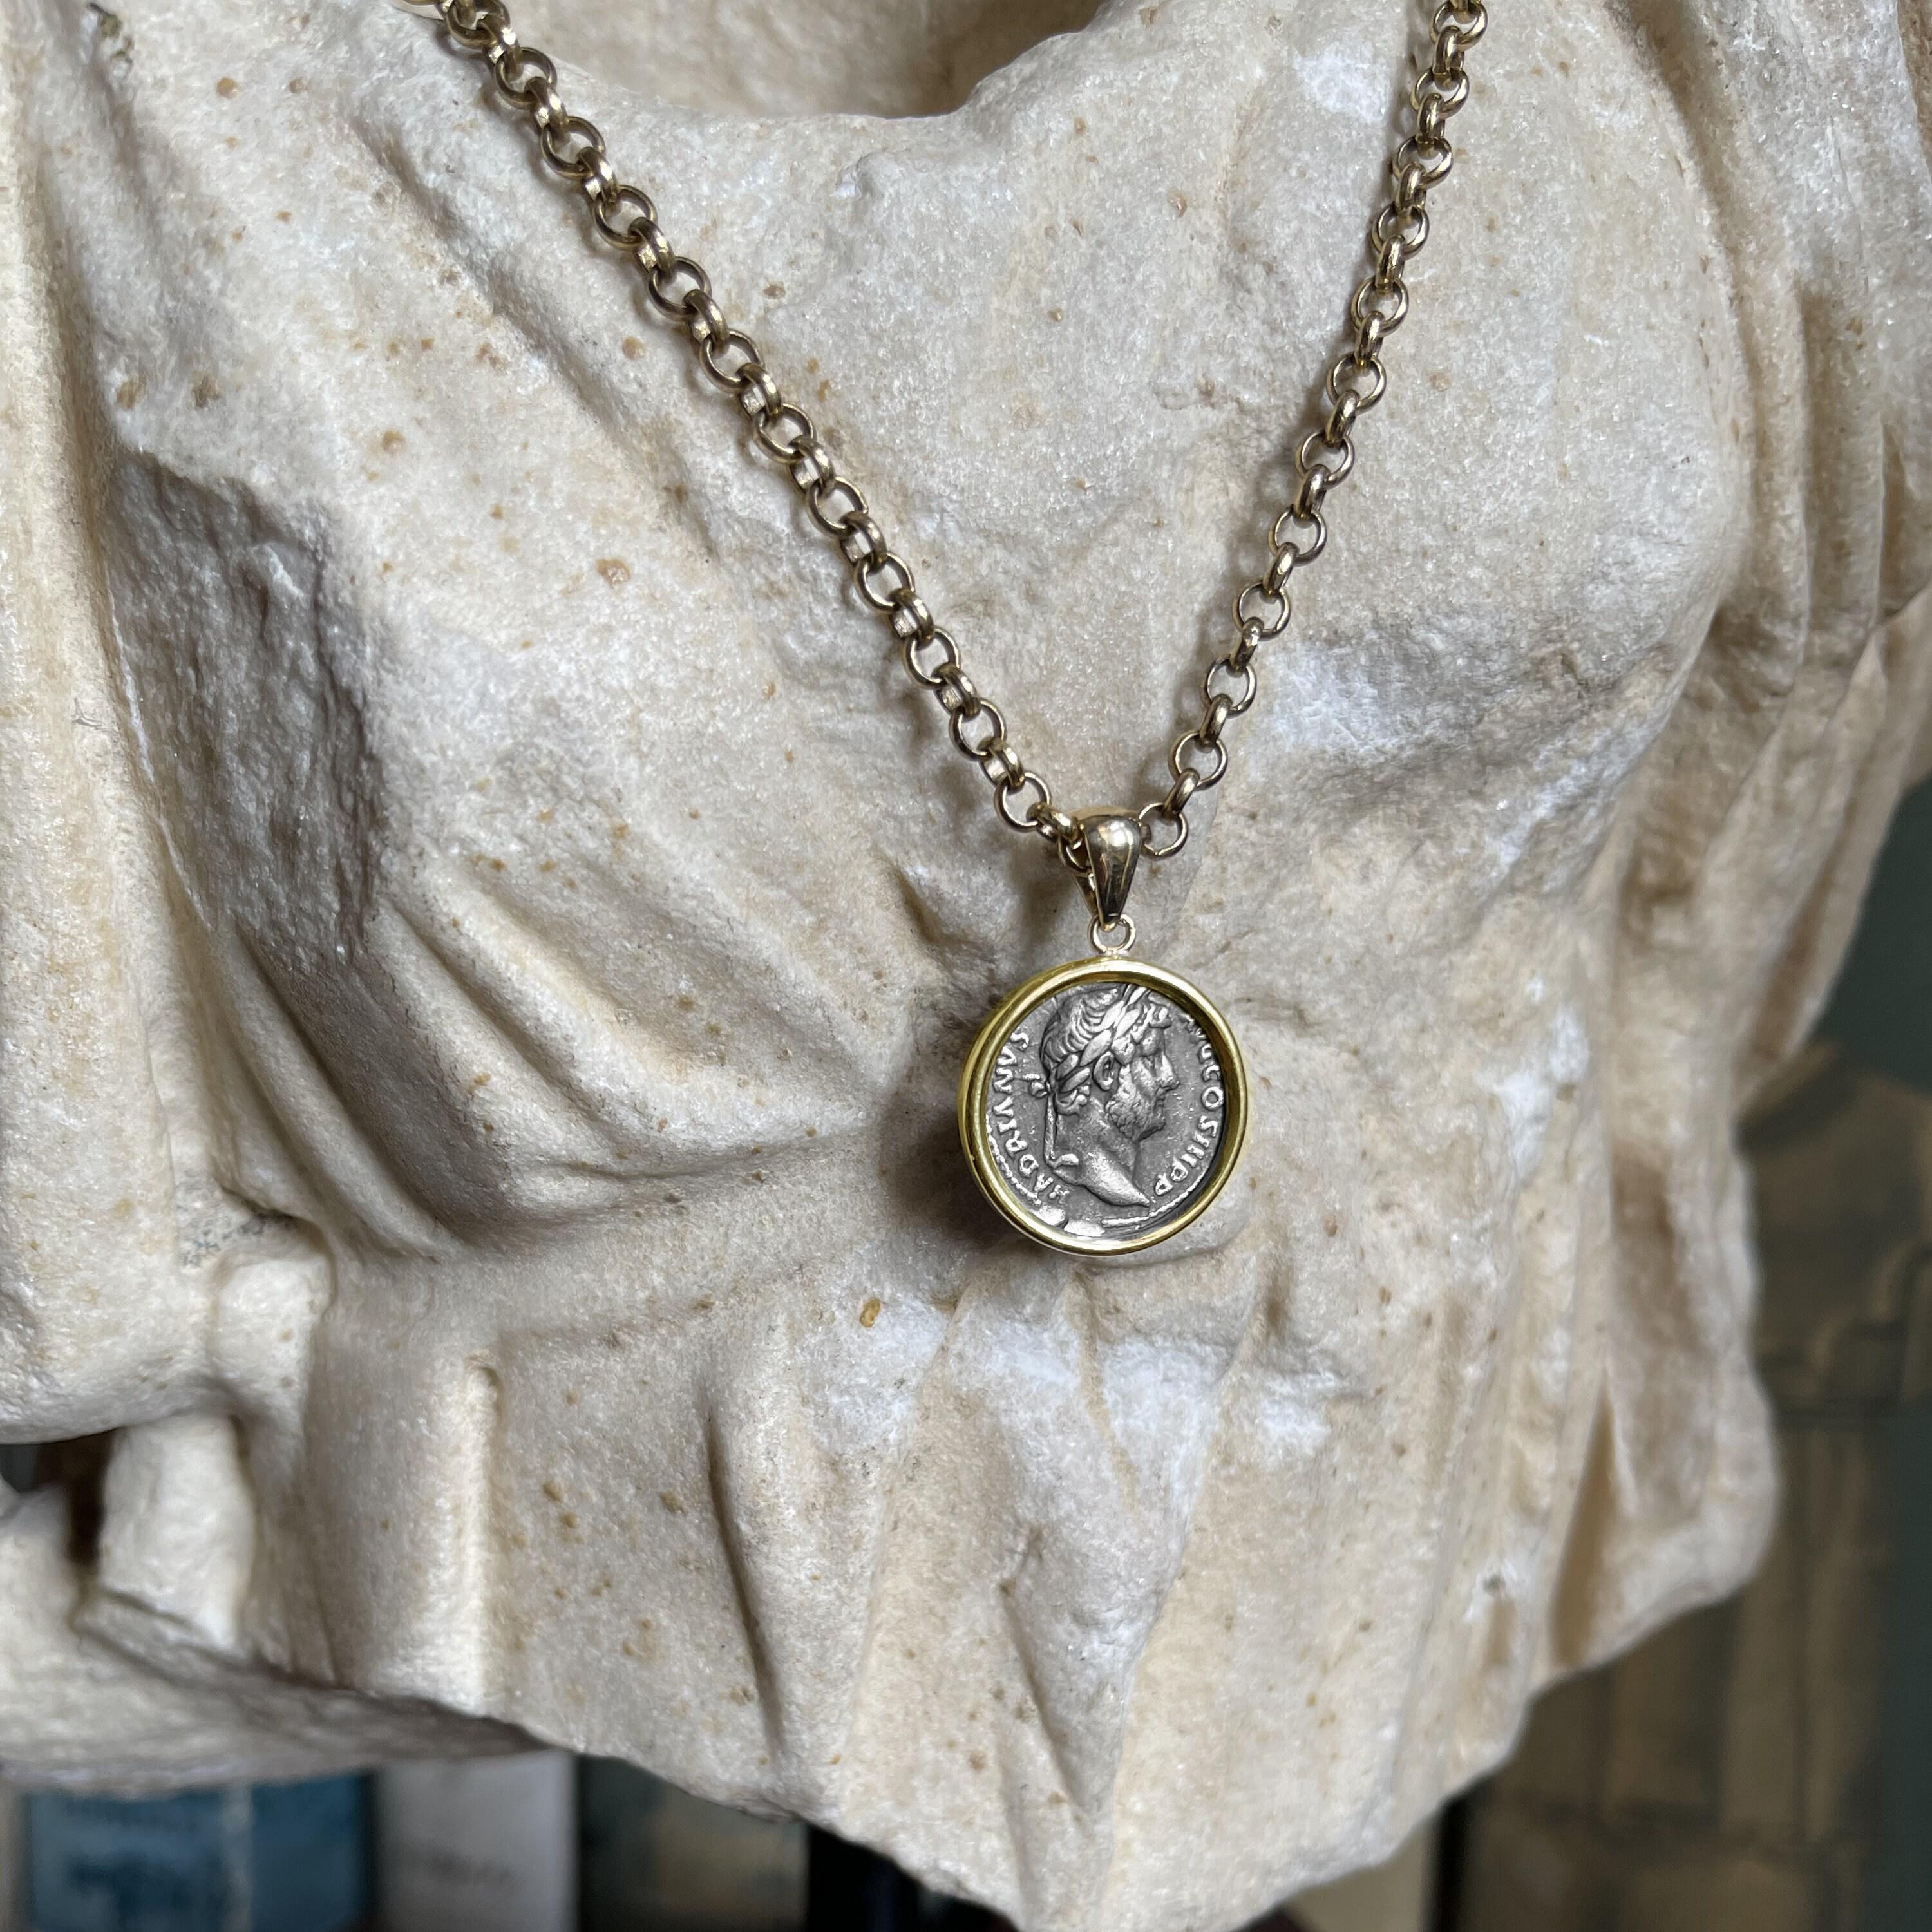 Ce pendentif en or 18 carats présente une authentique pièce de monnaie romaine du IIe siècle ADS, représentant l'empereur Hadrien d'un côté et la déesse Fortuna assise de l'autre. Hadrien, célèbre pour ses nombreux voyages et ses ambitieux projets